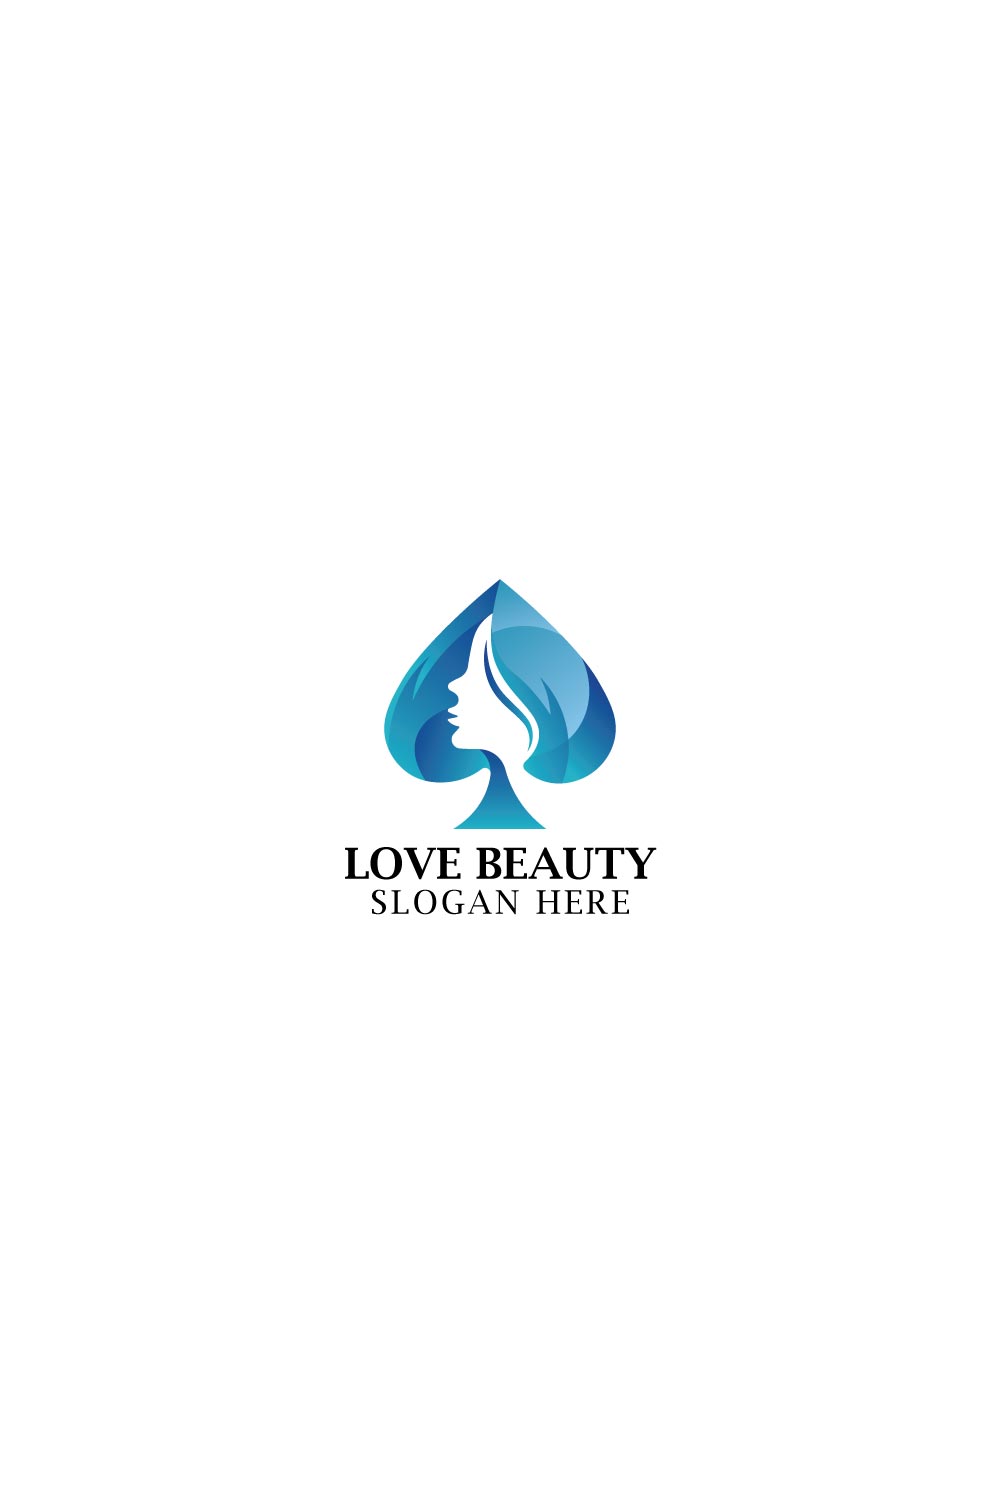 Beauty Love Feminine Logo vector logo template pinterest preview image.